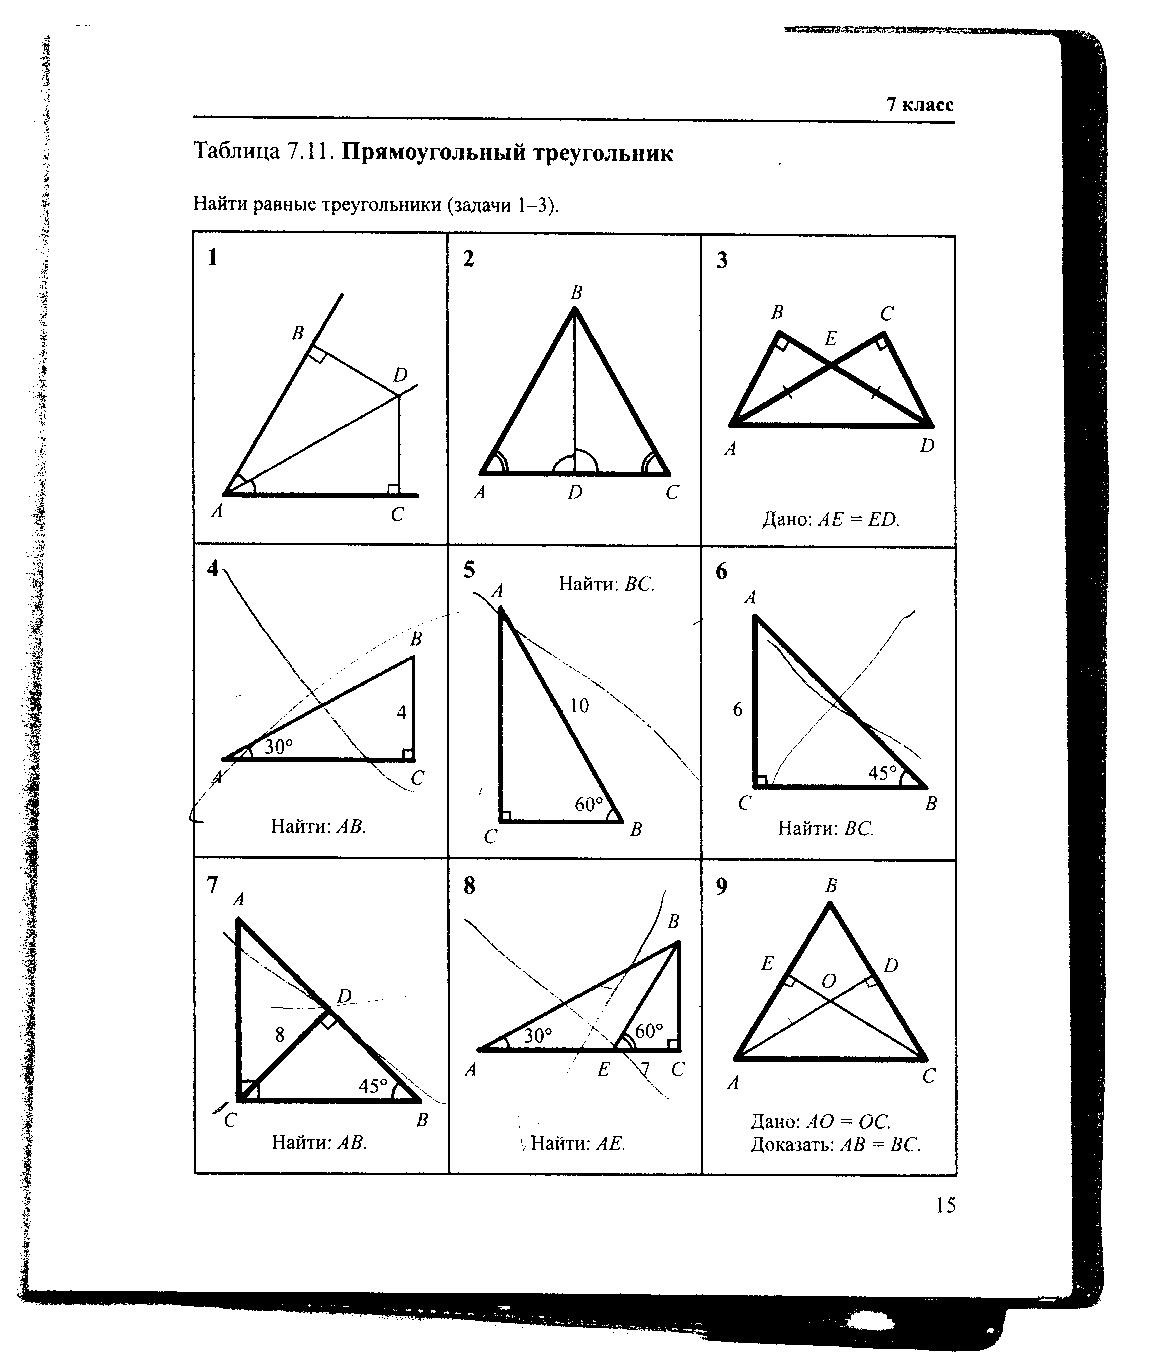 Задачи на чертежах 7 классы. Геометрия Рабинович 7-9 класс задачи на готовых чертежах. Гдз по геометрии Рабинович 7-9 класс задачи на готовых чертежах. Гдз Рабинович 7-9 класс геометрия ответы. Таблица 7.11 прямоугольный треугольник 7 класс.